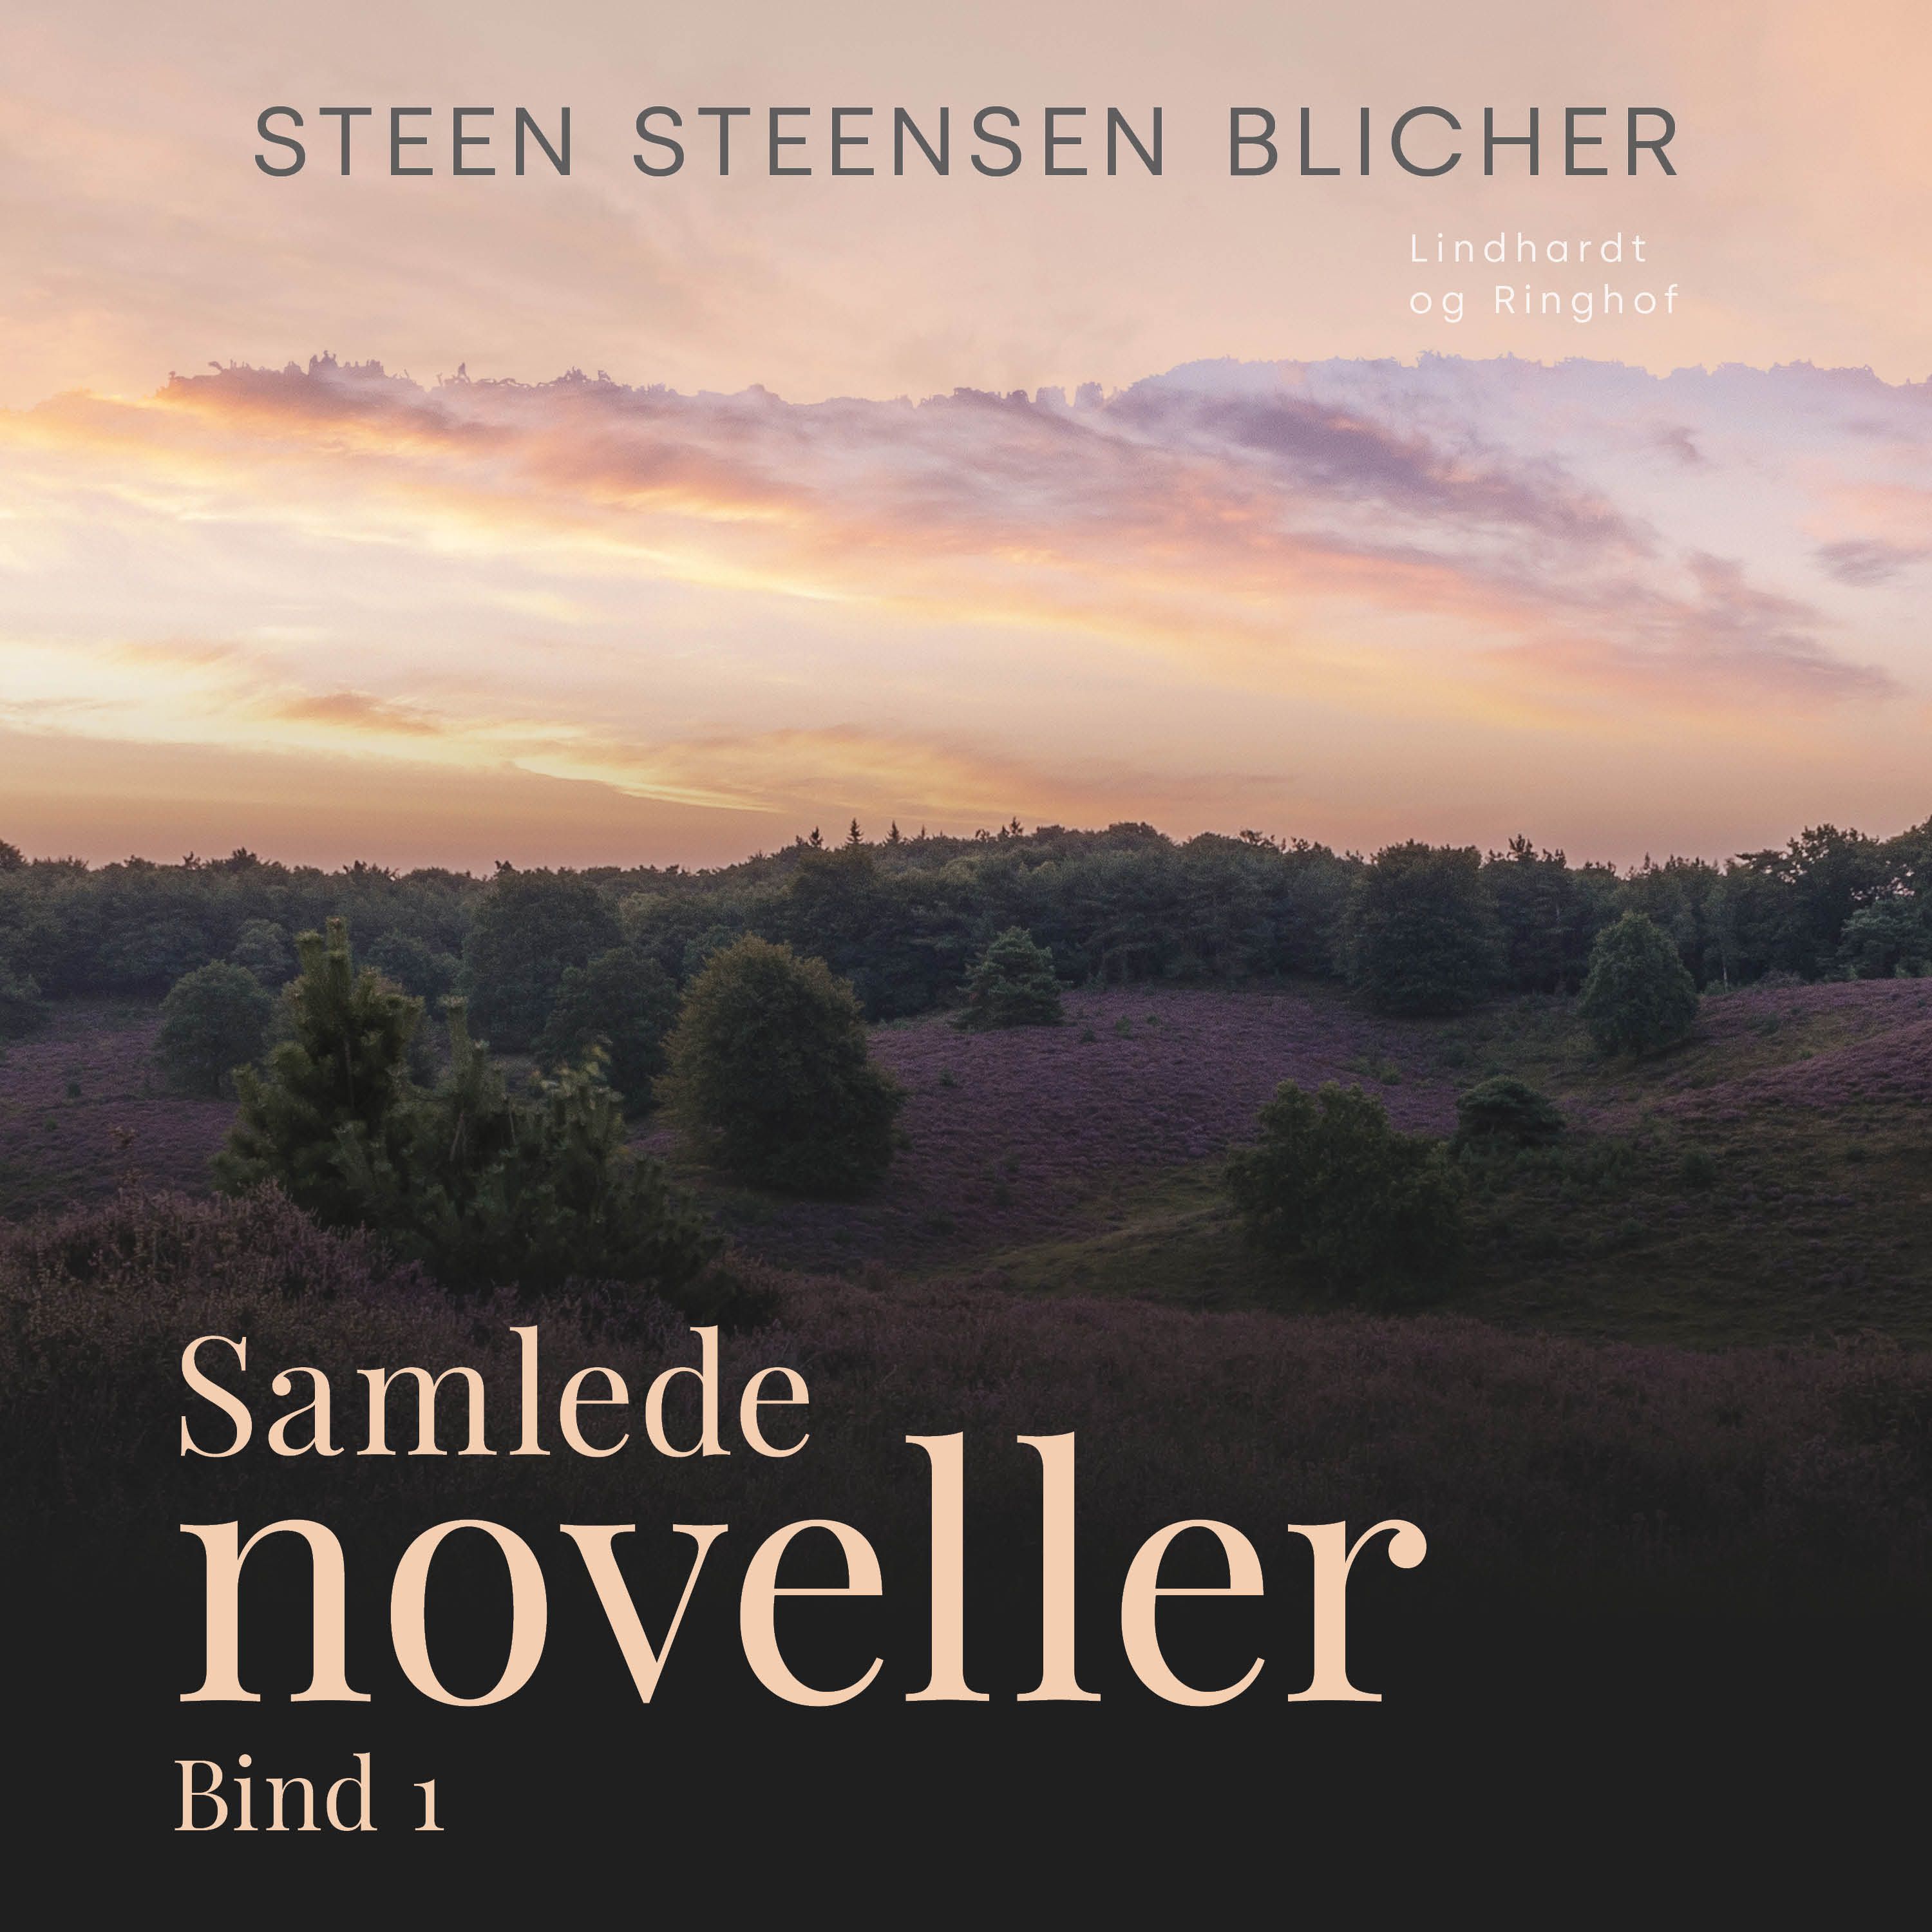 Samlede noveller. Bind 1, ljudbok av Steen Steensen Blicher